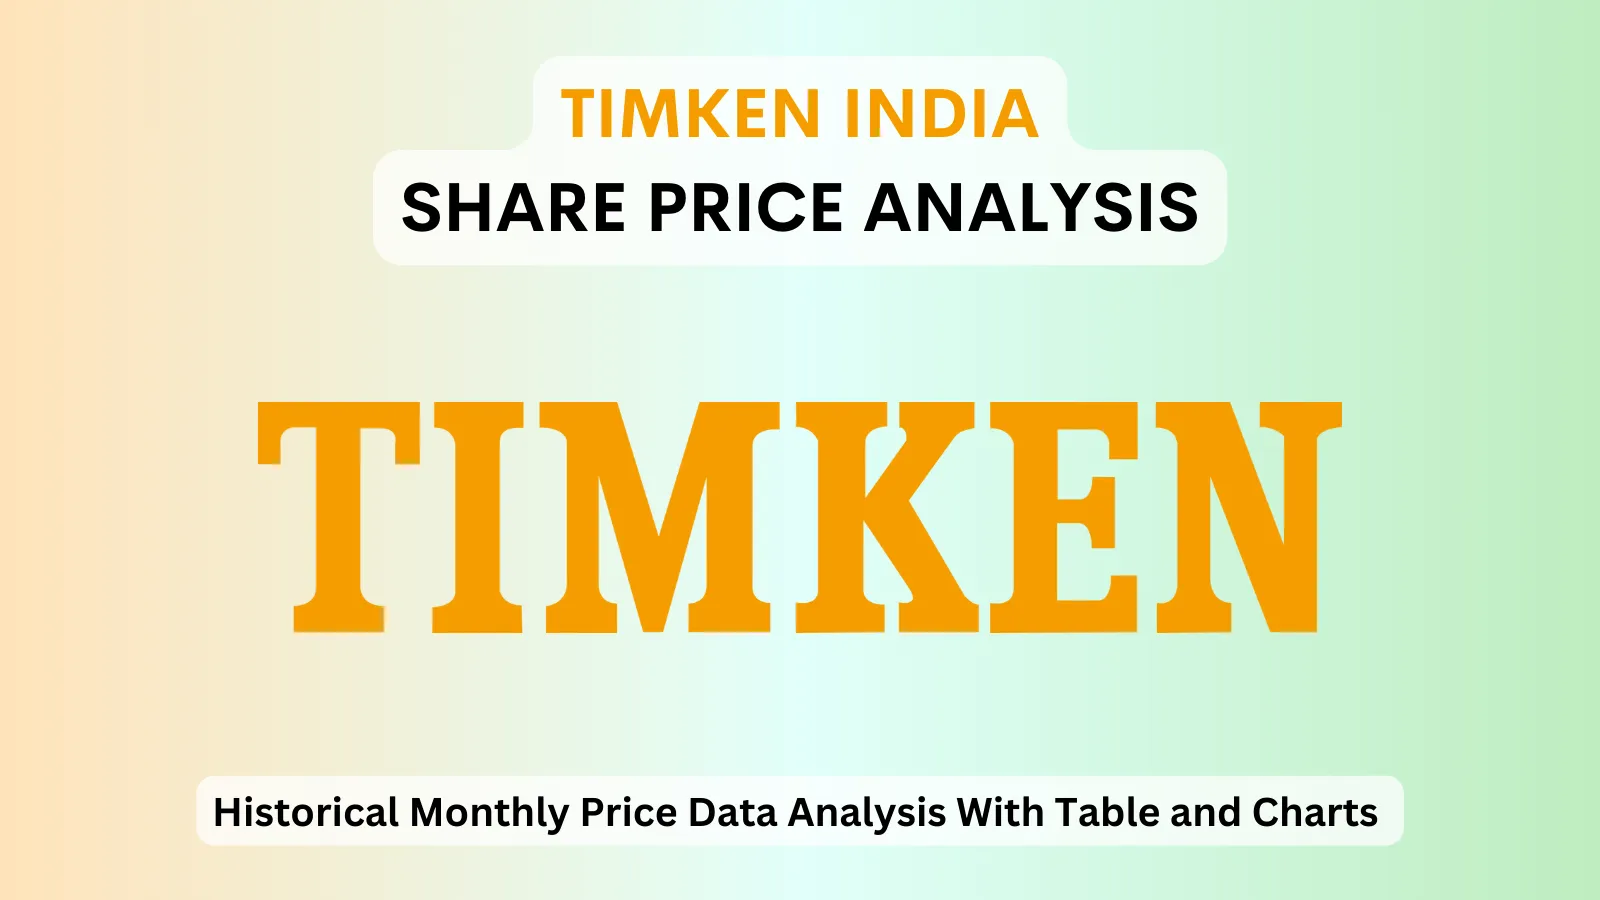 Timken India share price analysis